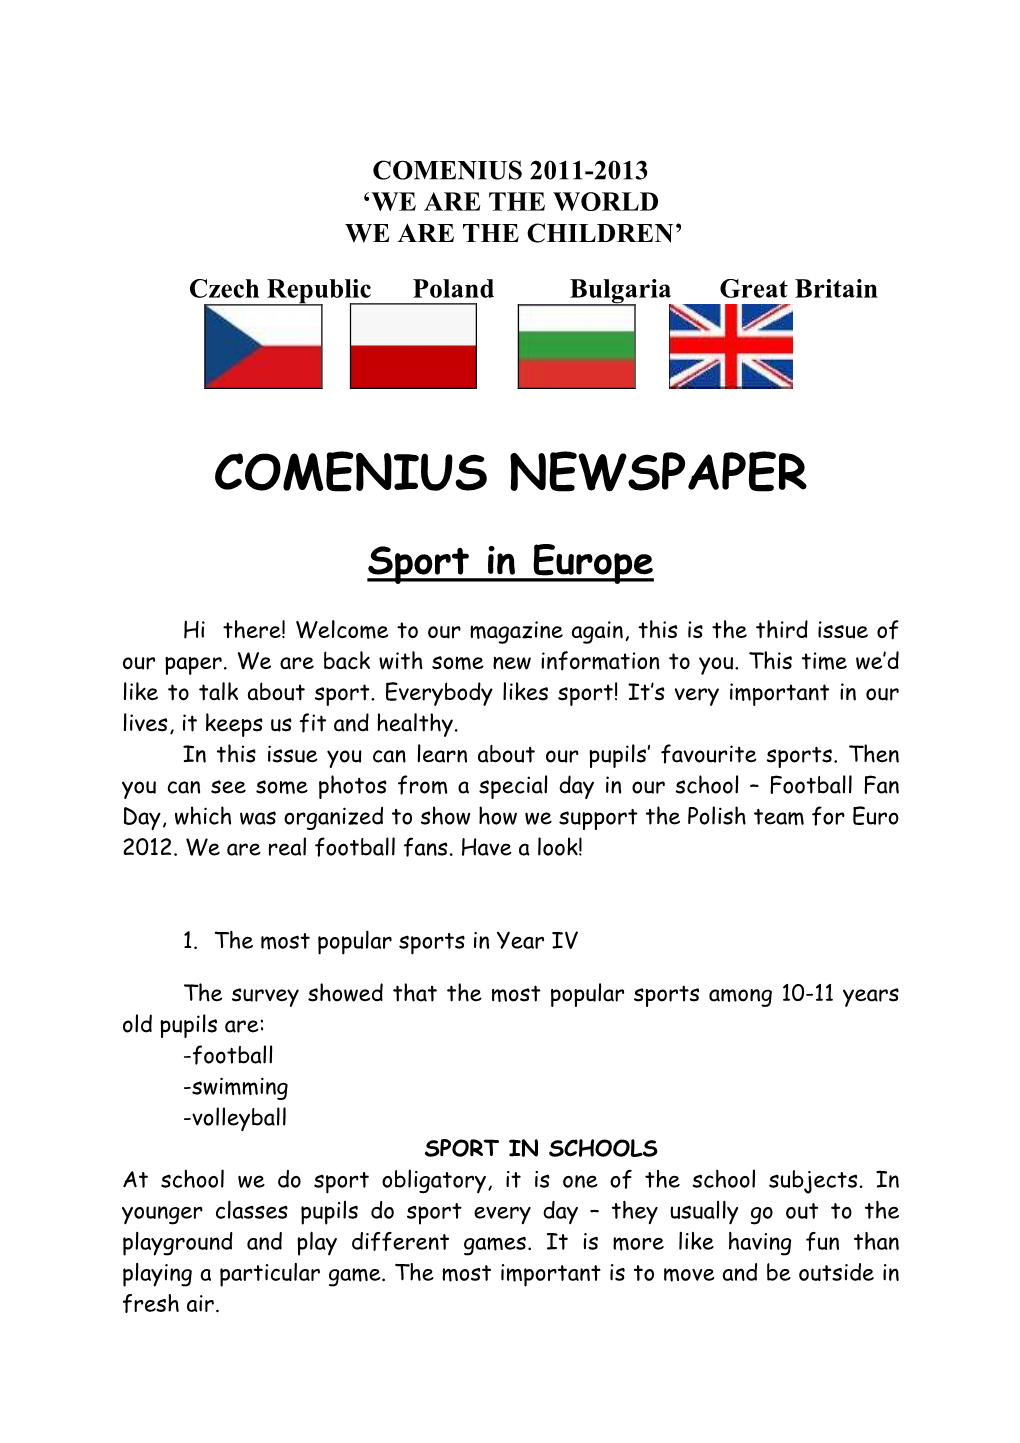 Comenius Newspaper